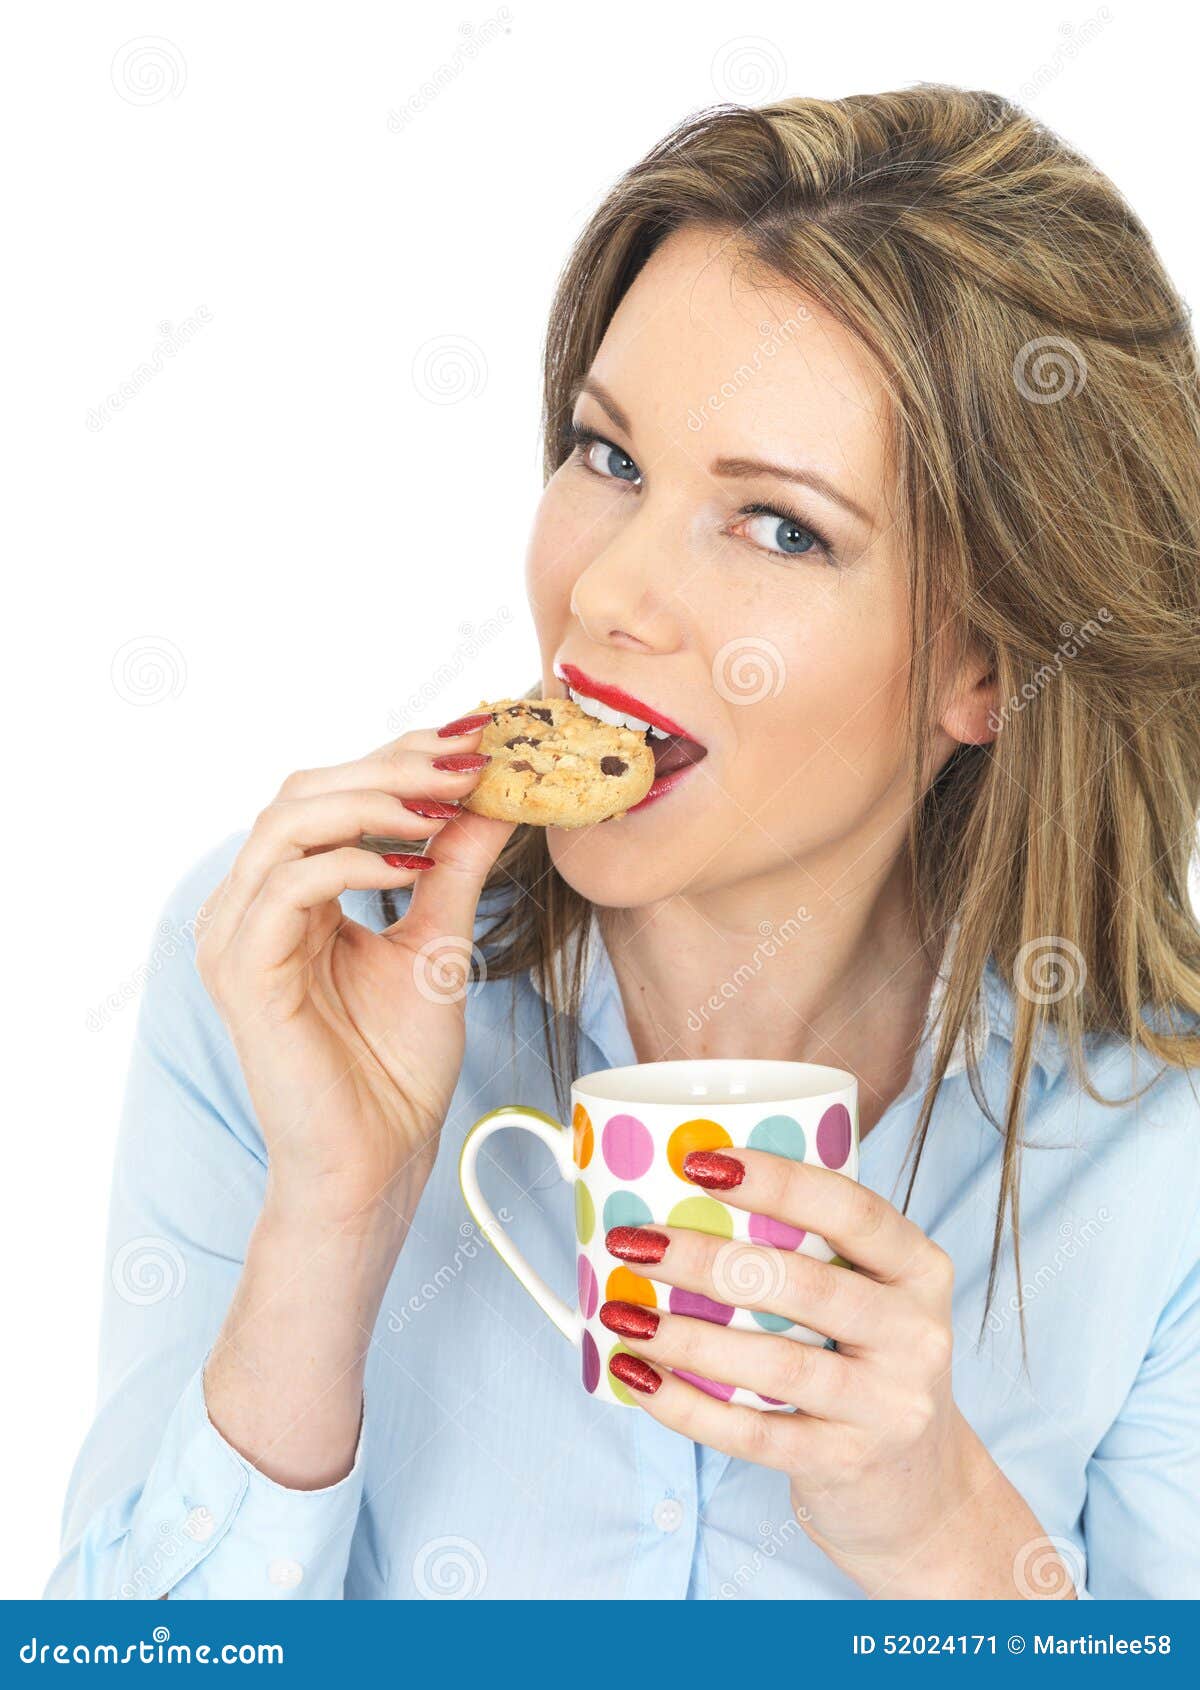 Чай пью с печеньем. Девушка с печеньем. Девушка пьет чай с печеньем. Печенье и рука девушек. Девушка с печеньем фото.